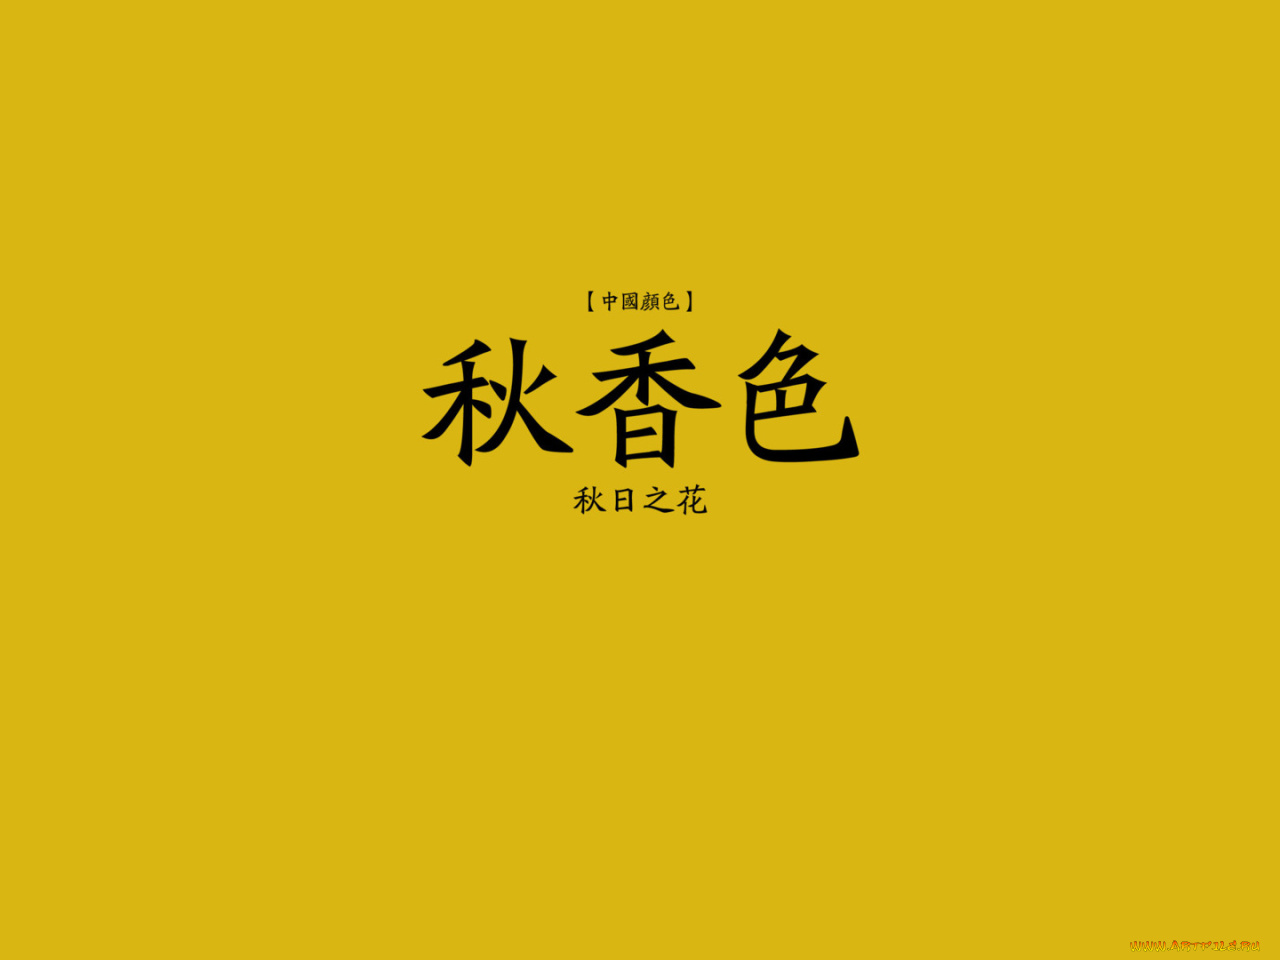 Китайские надписи